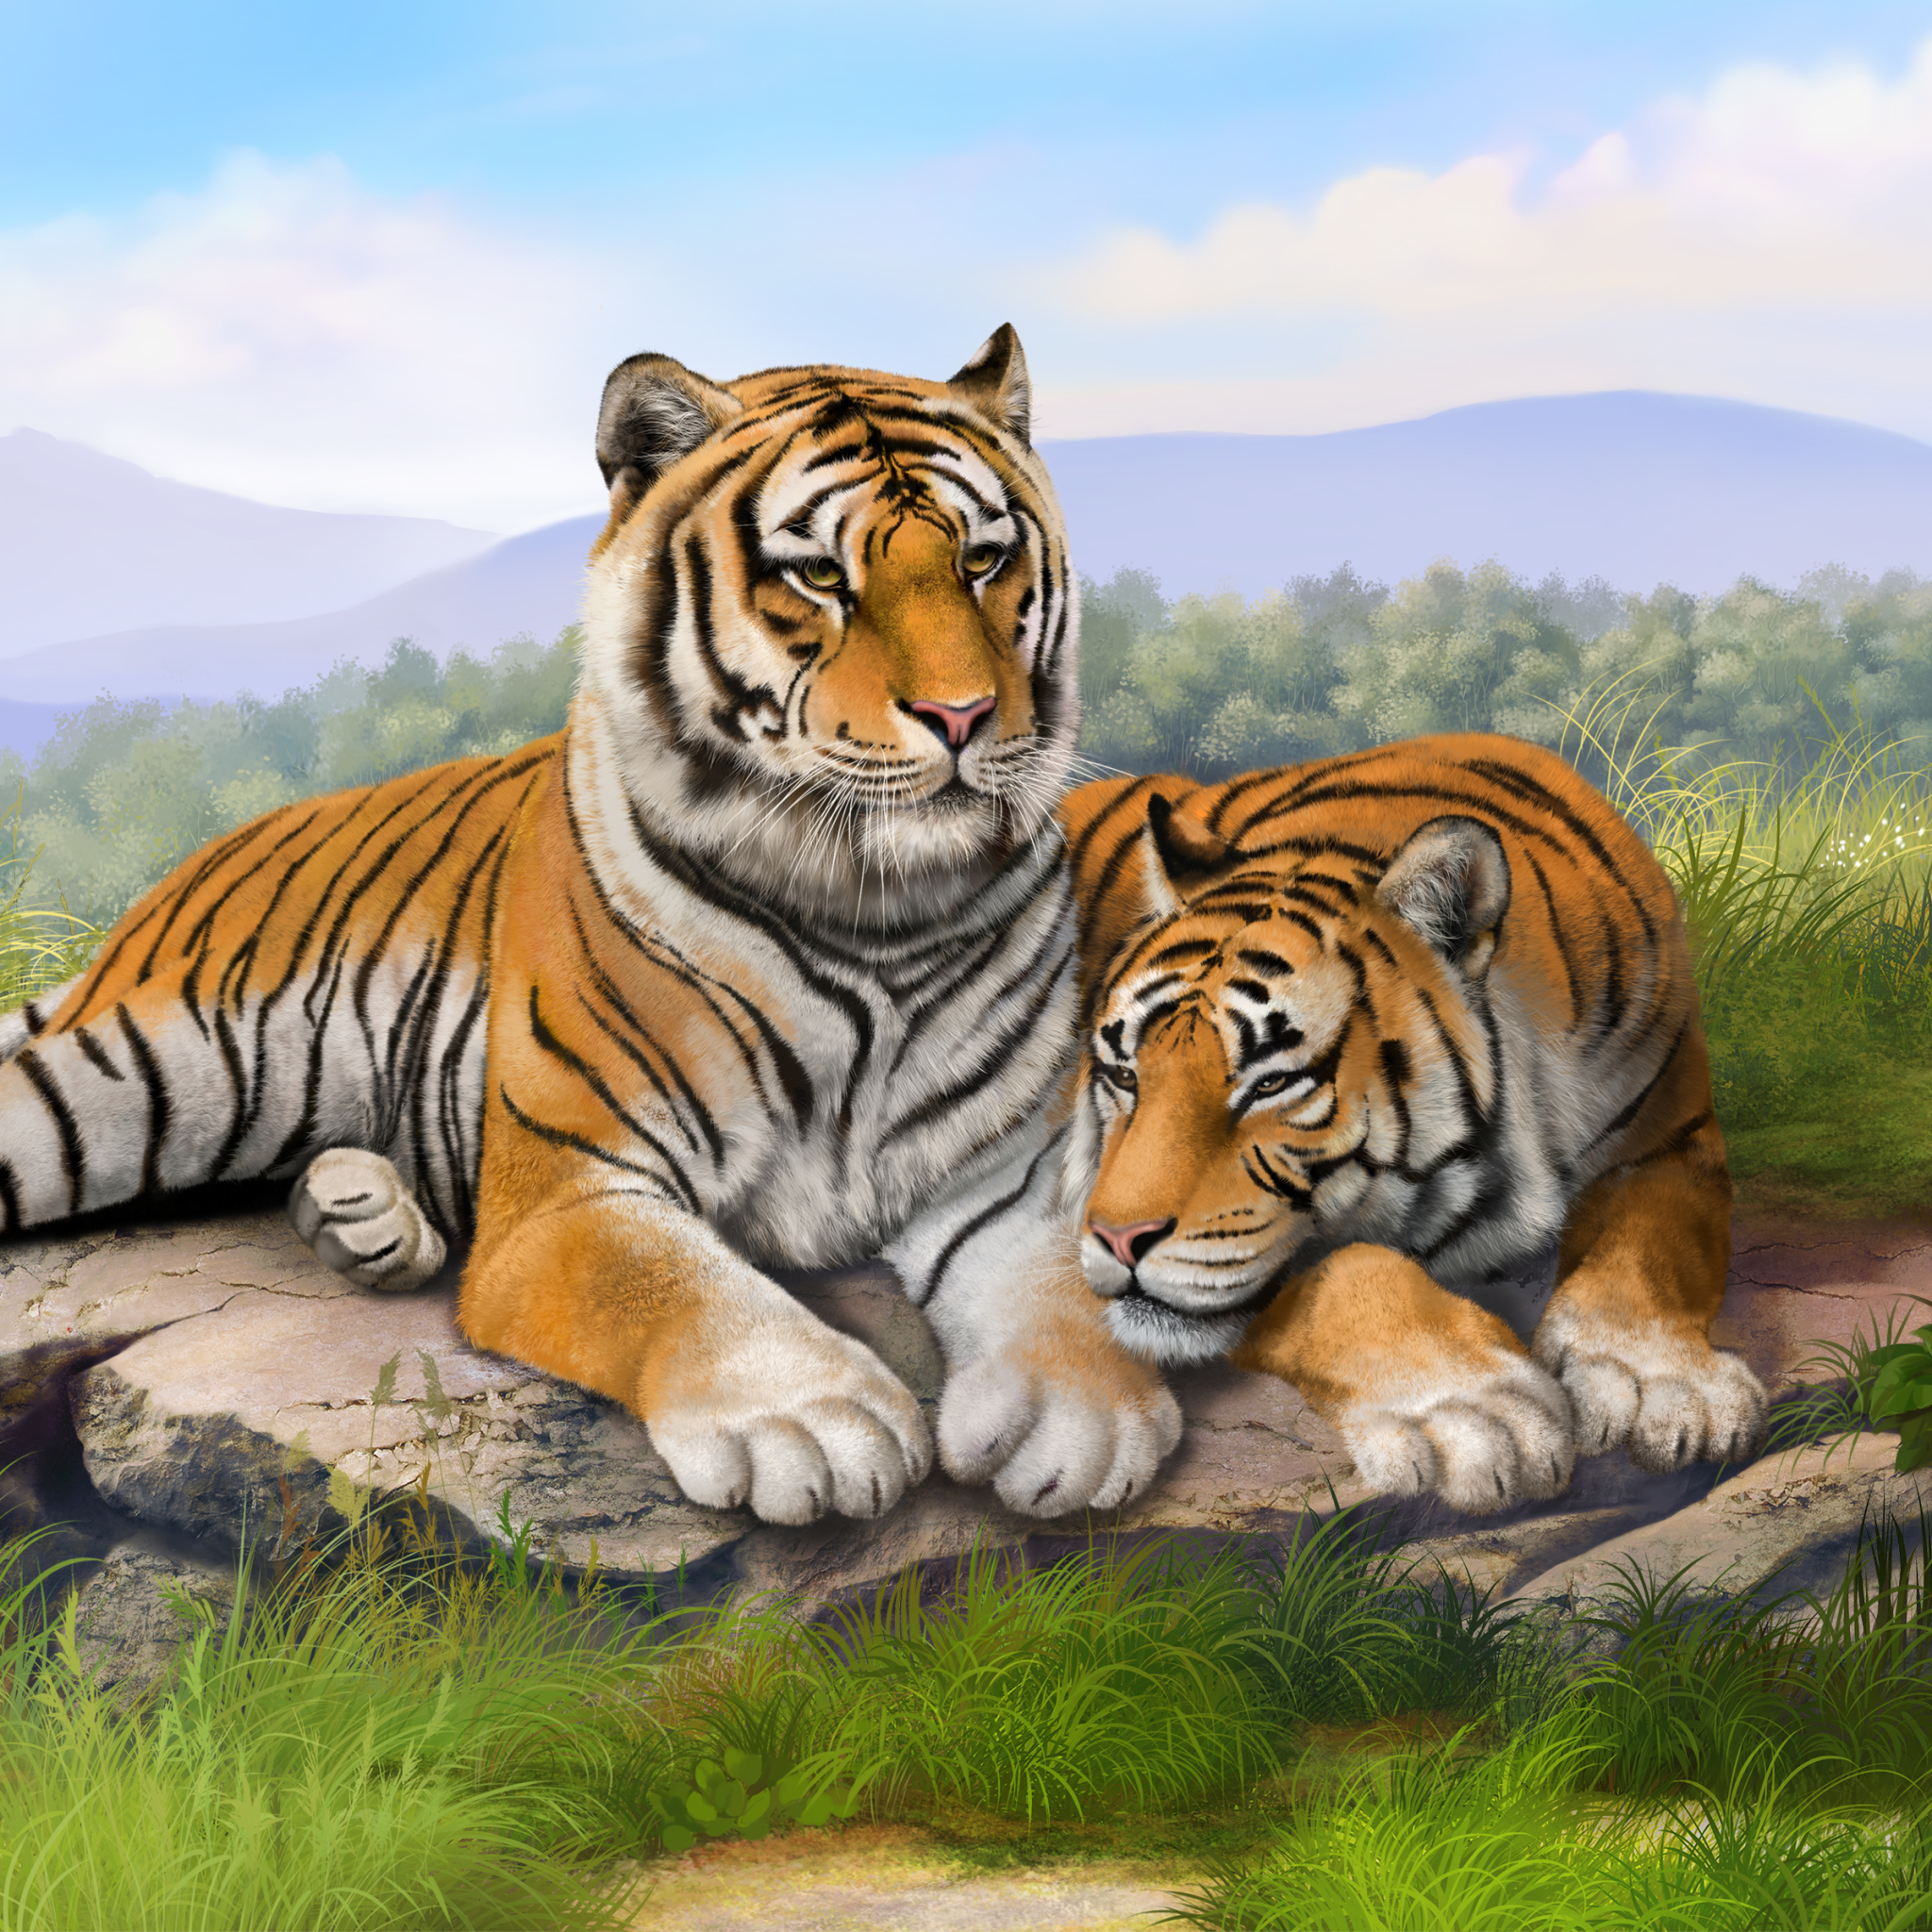 Tigers by Olga Grigoryeva